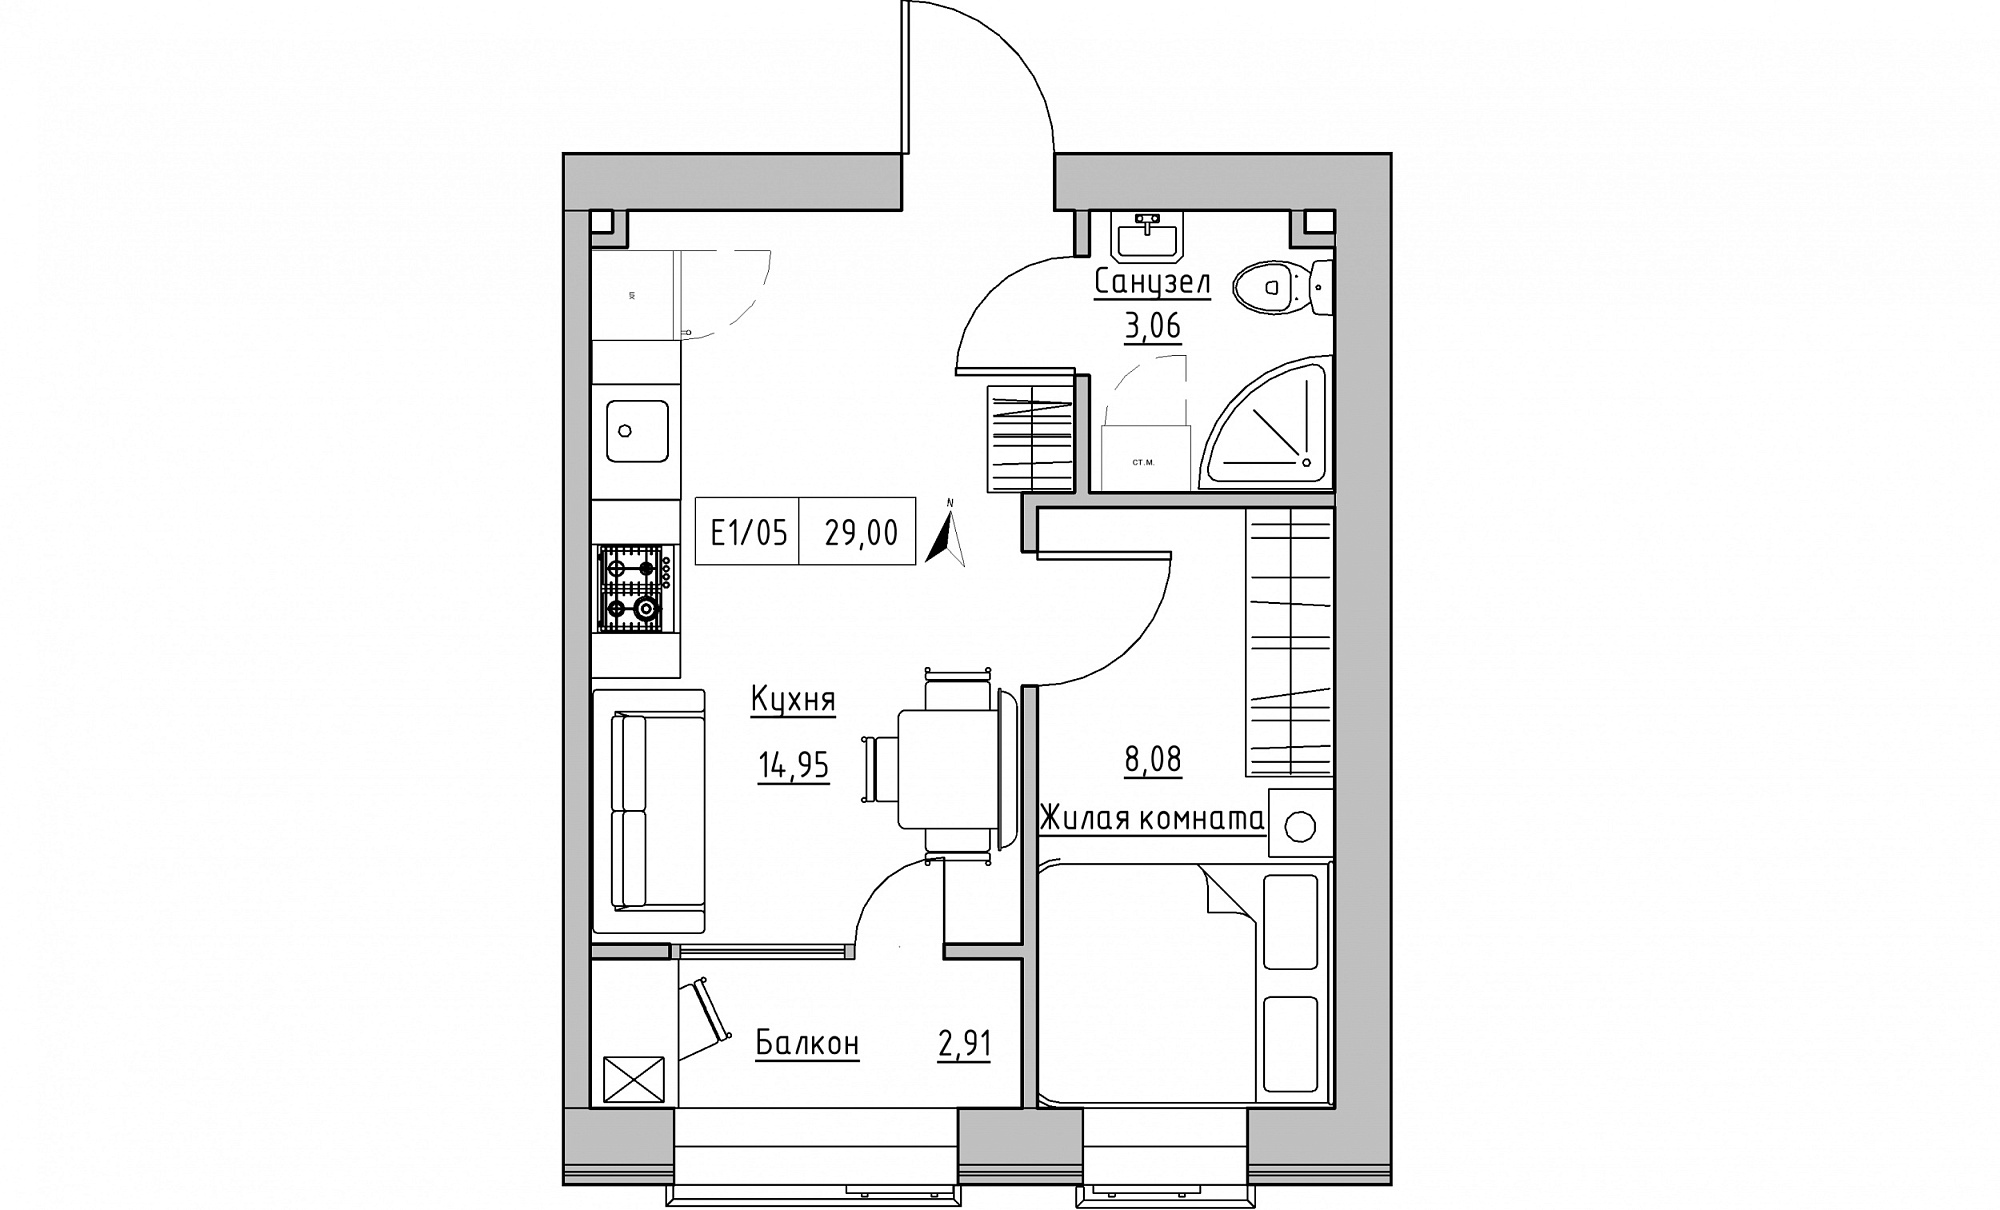 Планировка 1-к квартира площей 29м2, KS-015-03/0009.